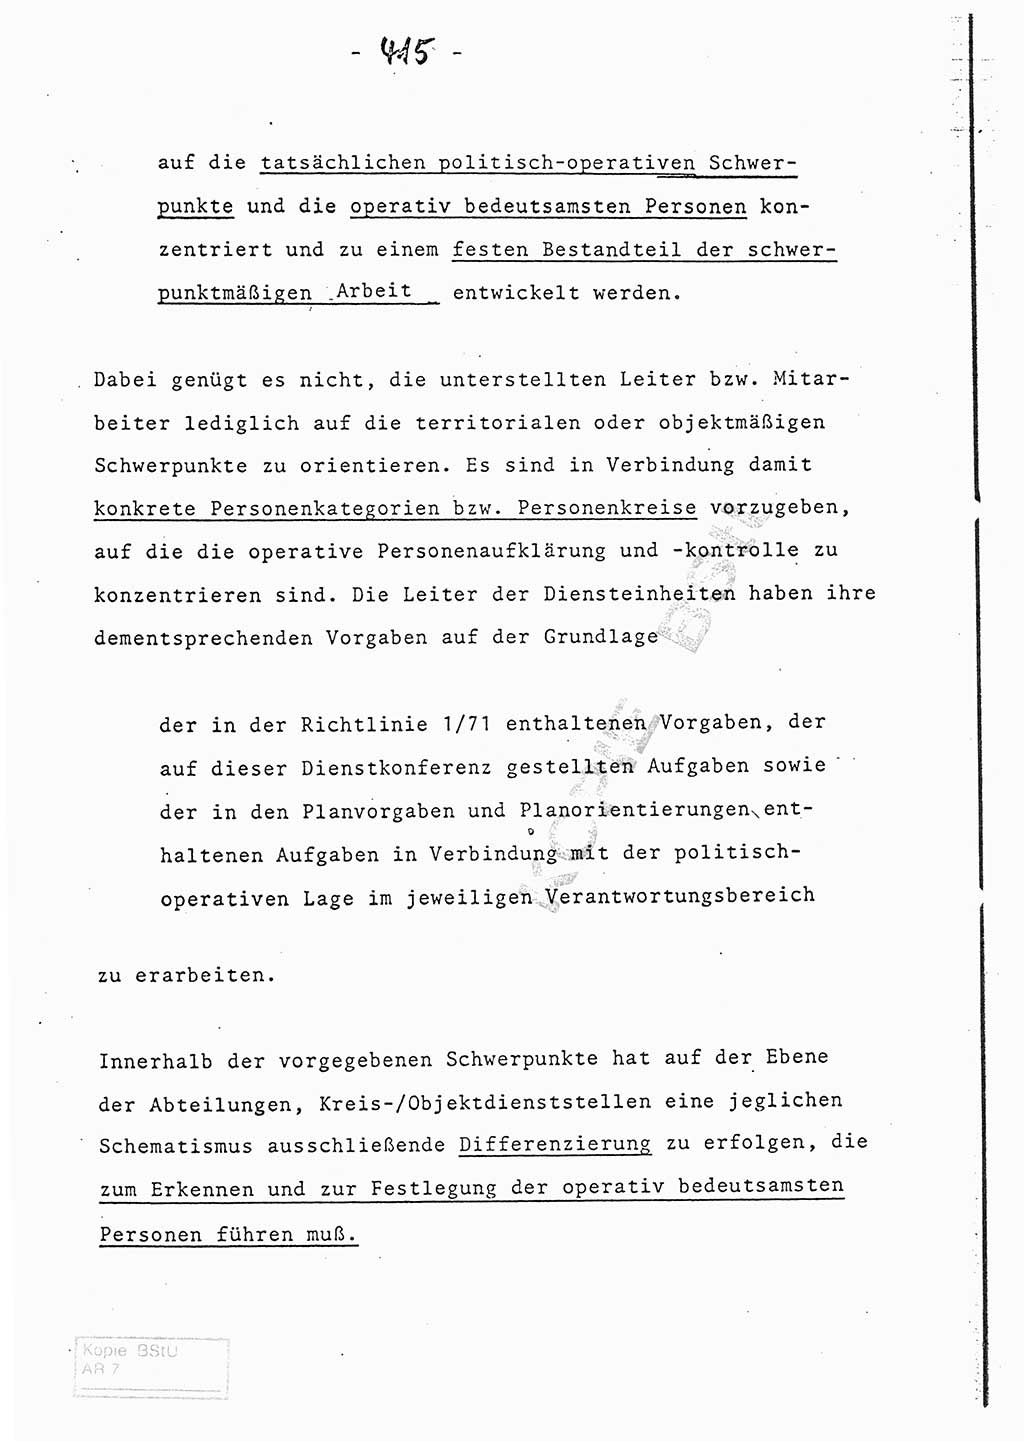 Referat (Entwurf) des Genossen Minister (Generaloberst Erich Mielke) auf der Dienstkonferenz 1972, Ministerium für Staatssicherheit (MfS) [Deutsche Demokratische Republik (DDR)], Der Minister, Geheime Verschlußsache (GVS) 008-150/72, Berlin 25.2.1972, Seite 415 (Ref. Entw. DK MfS DDR Min. GVS 008-150/72 1972, S. 415)